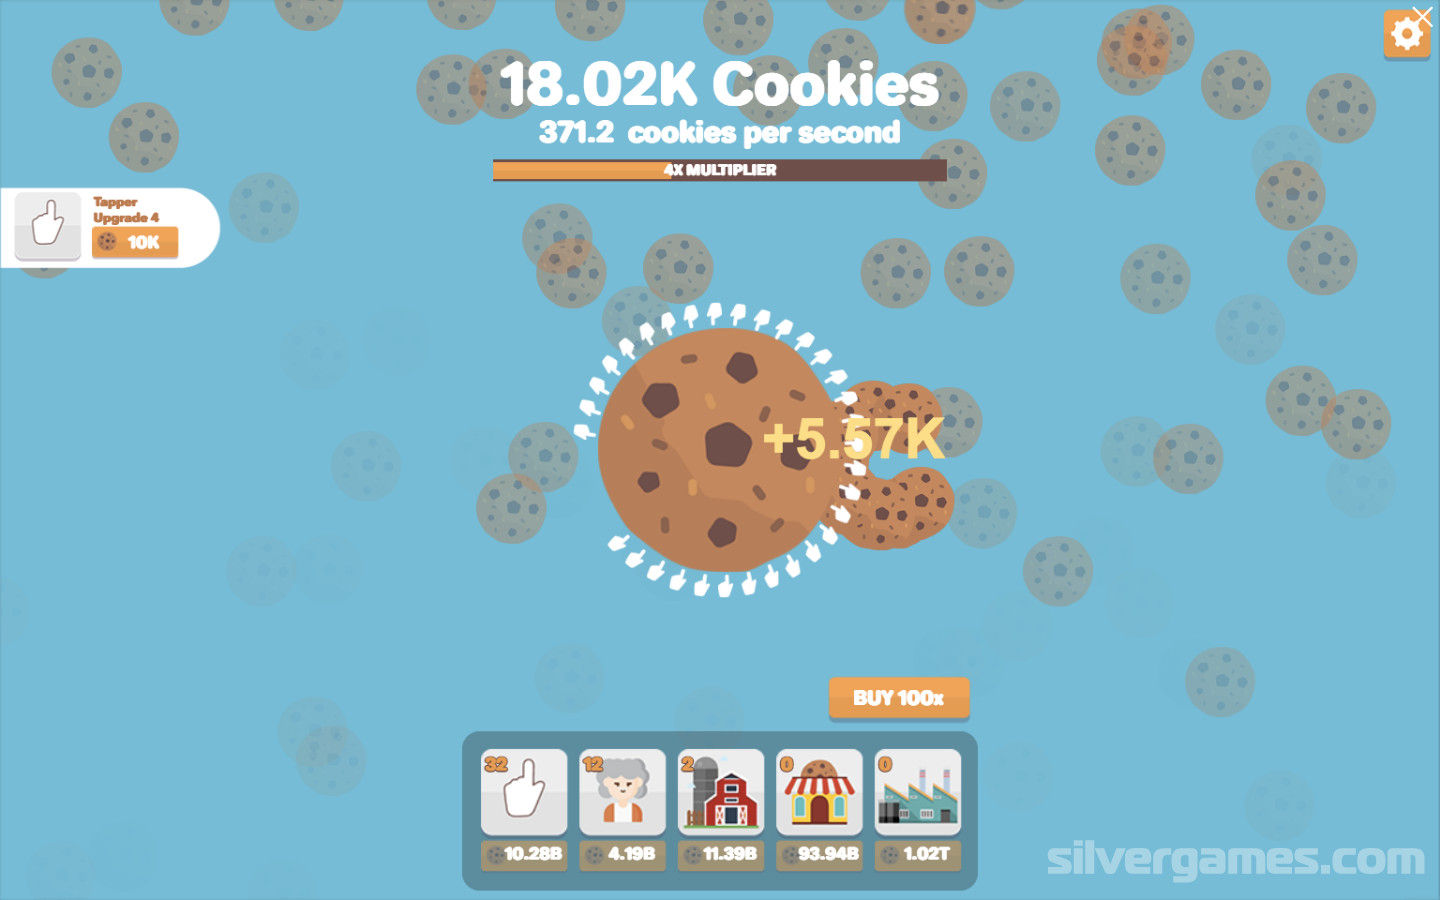 Cookie Clicker será lançado no PC via Steam em 1º de setembro com  localização em português - GameBlast